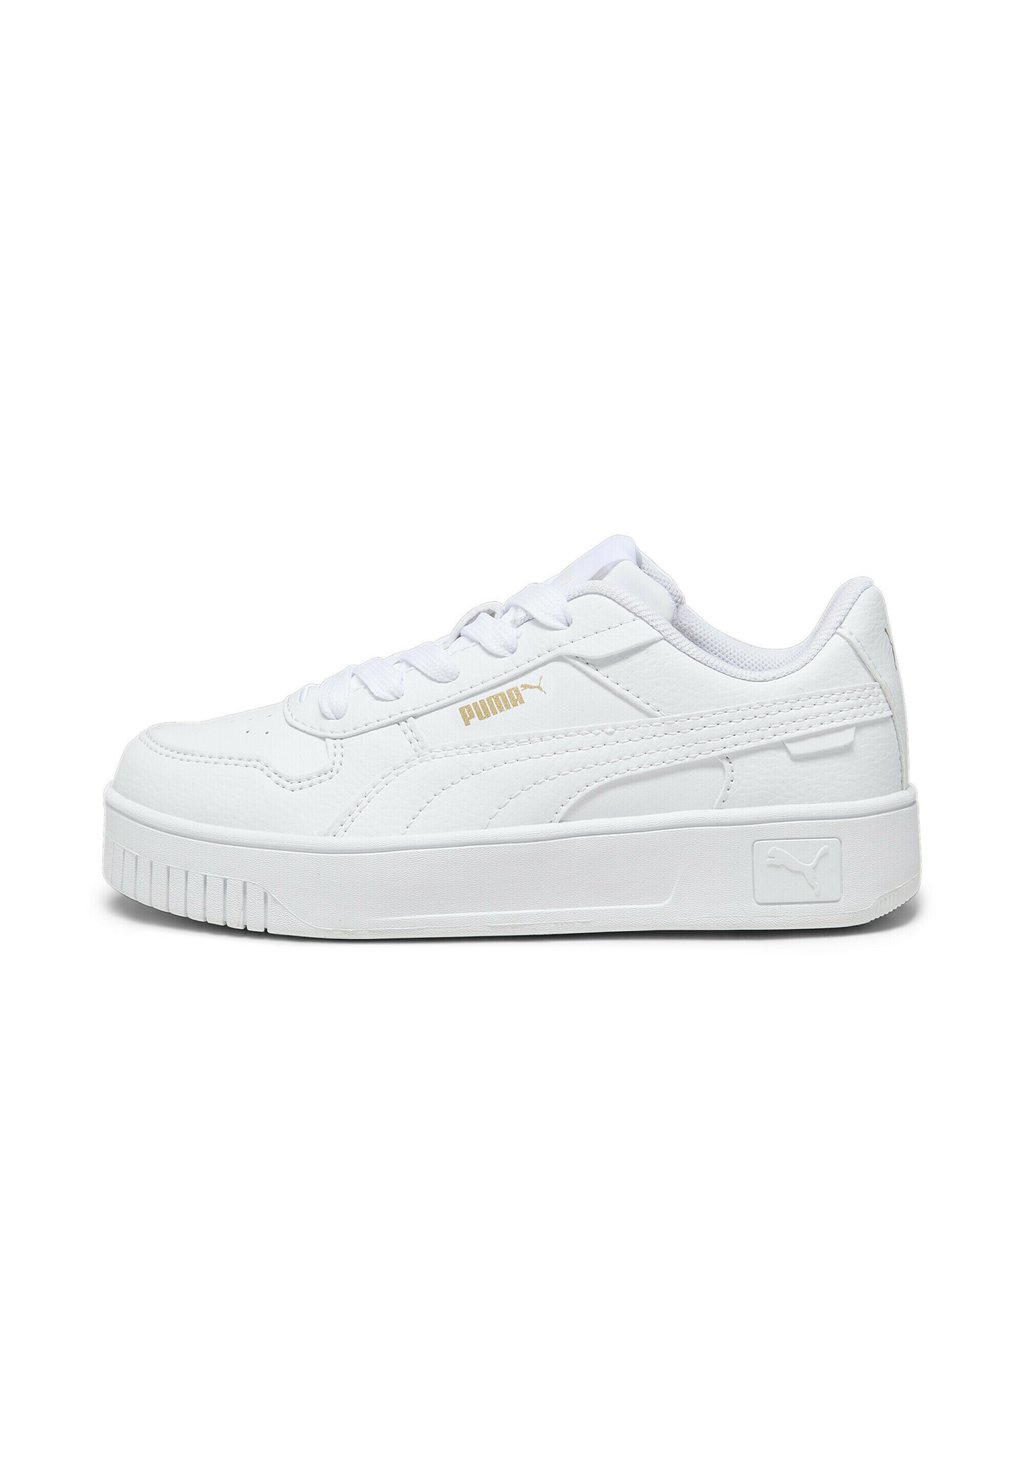 Кроссовки низкие CARINA STREET PS Puma, цвет white white gold цена и фото